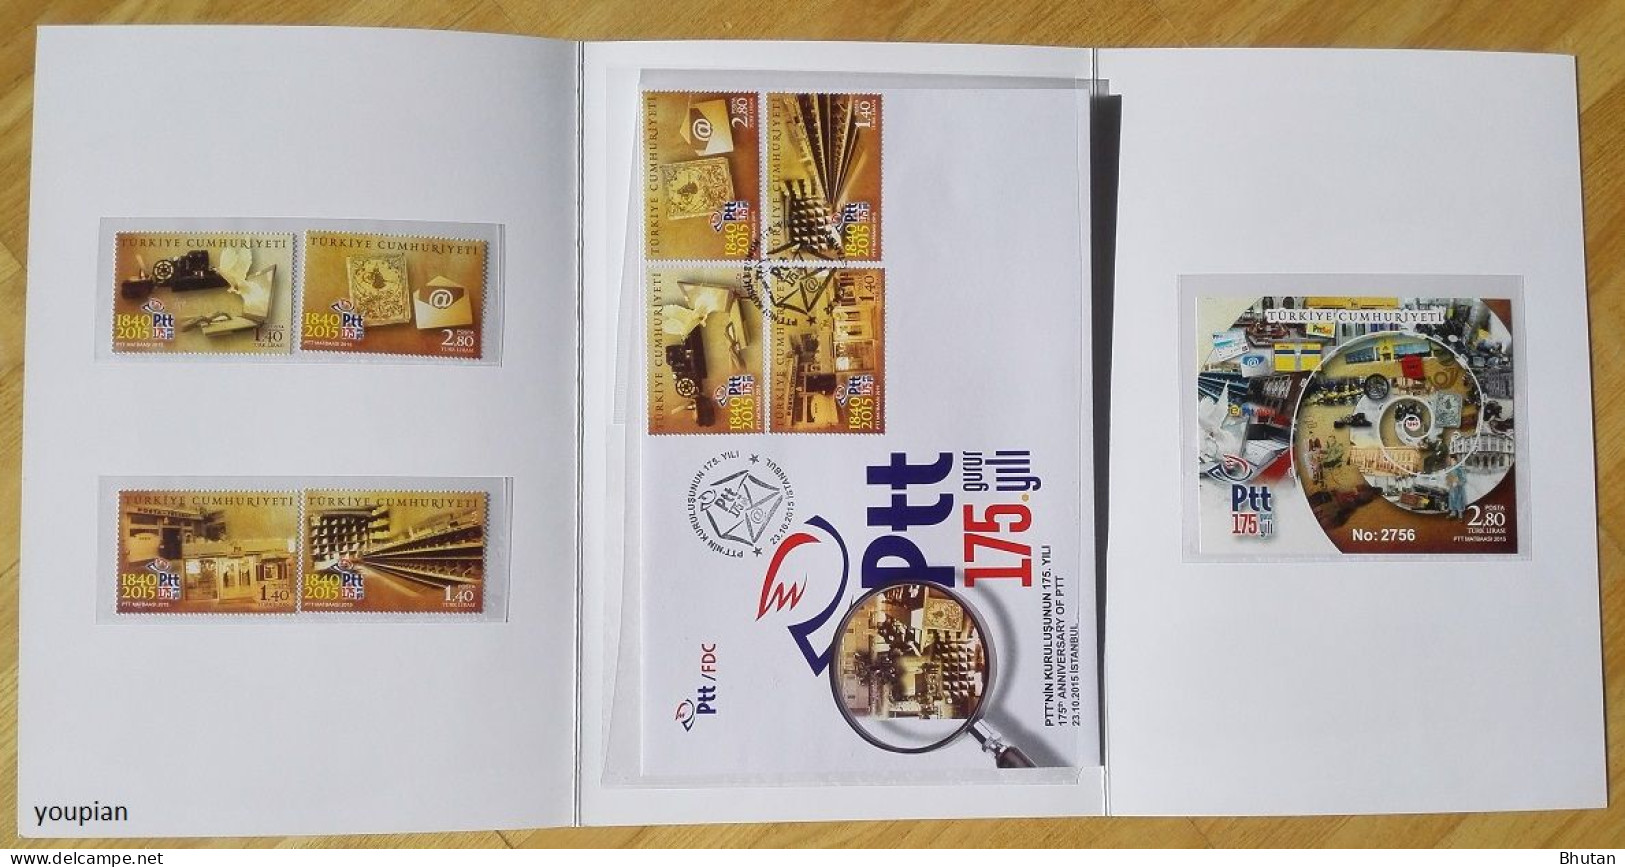 Türkiye 2015, 175th Anniversary Of PTT, MNH Unusual S/S, Stamps Set And FDC - Portfolio - Ongebruikt